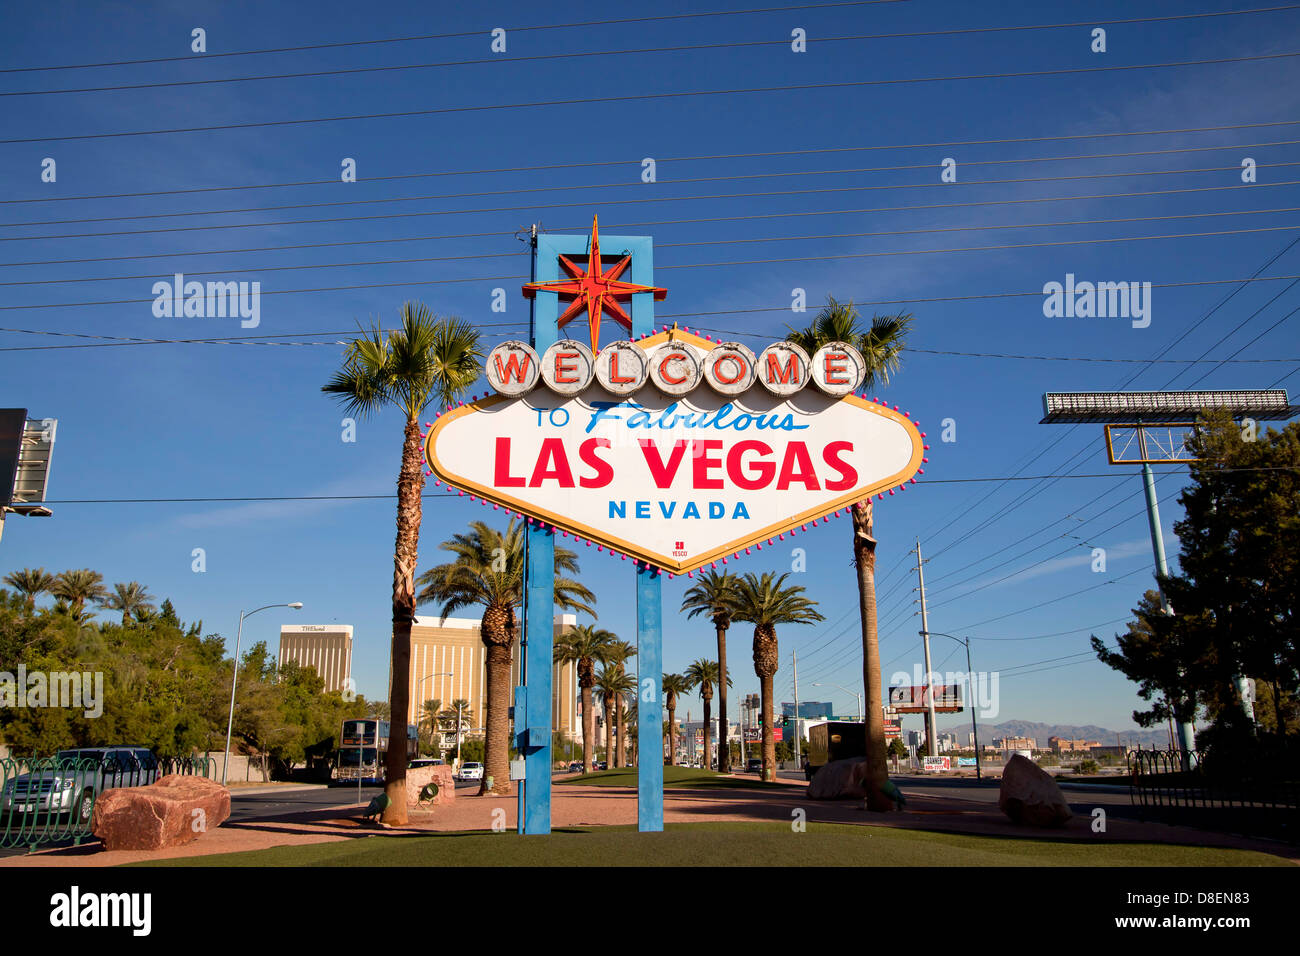 La célèbre inscription Bienvenue à Las Vegas, Nevada à Las Vegas, Nevada, United States of America, USA Banque D'Images